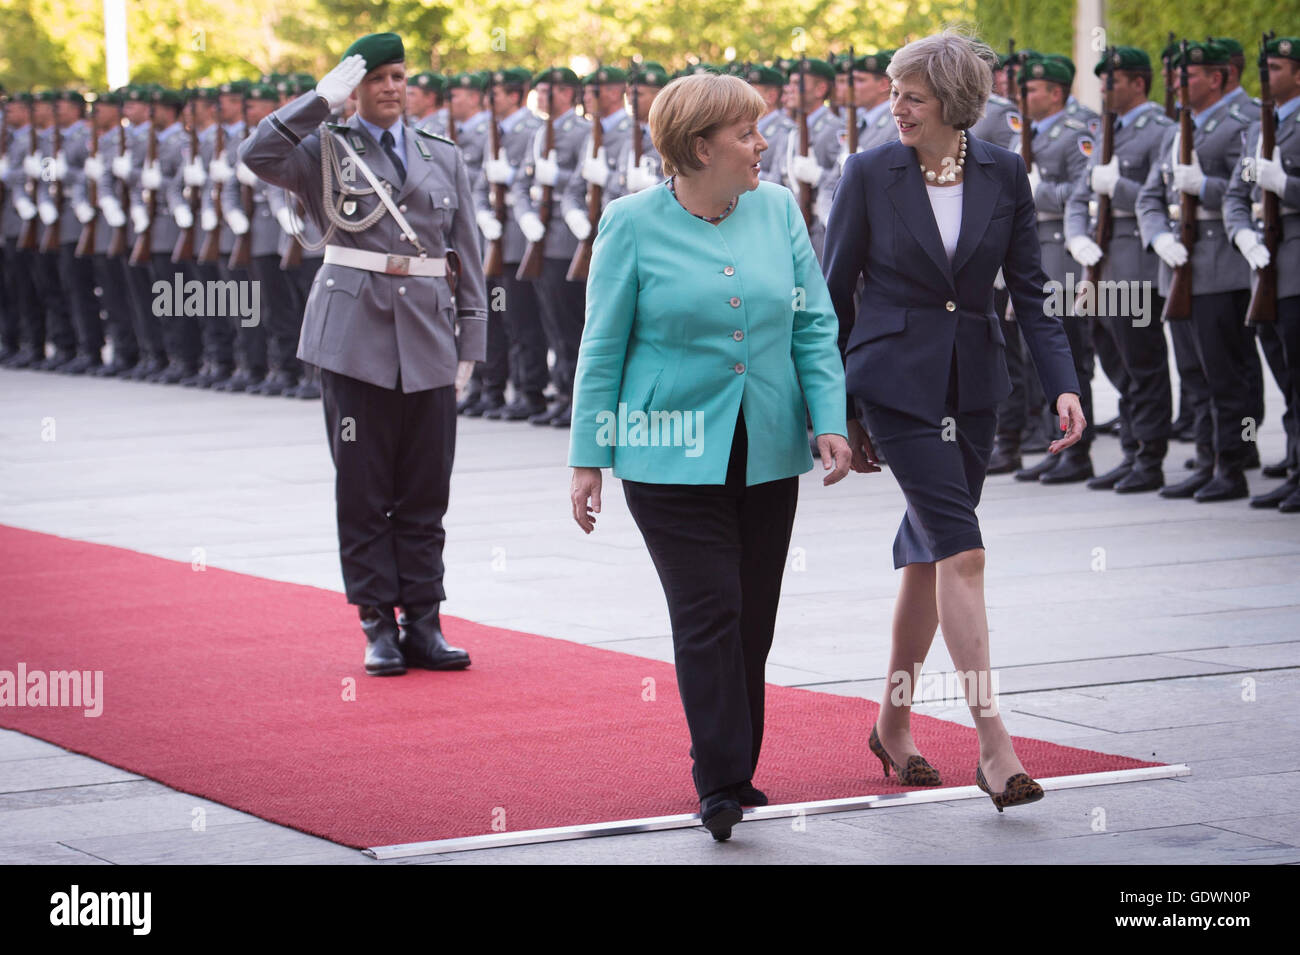 Premierminister Theresa May prüft der Guard of Honour wie sie Bundeskanzlerin Angela Merkel im Kanzleramt in Berlin zu Gesprächen trifft. Stockfoto